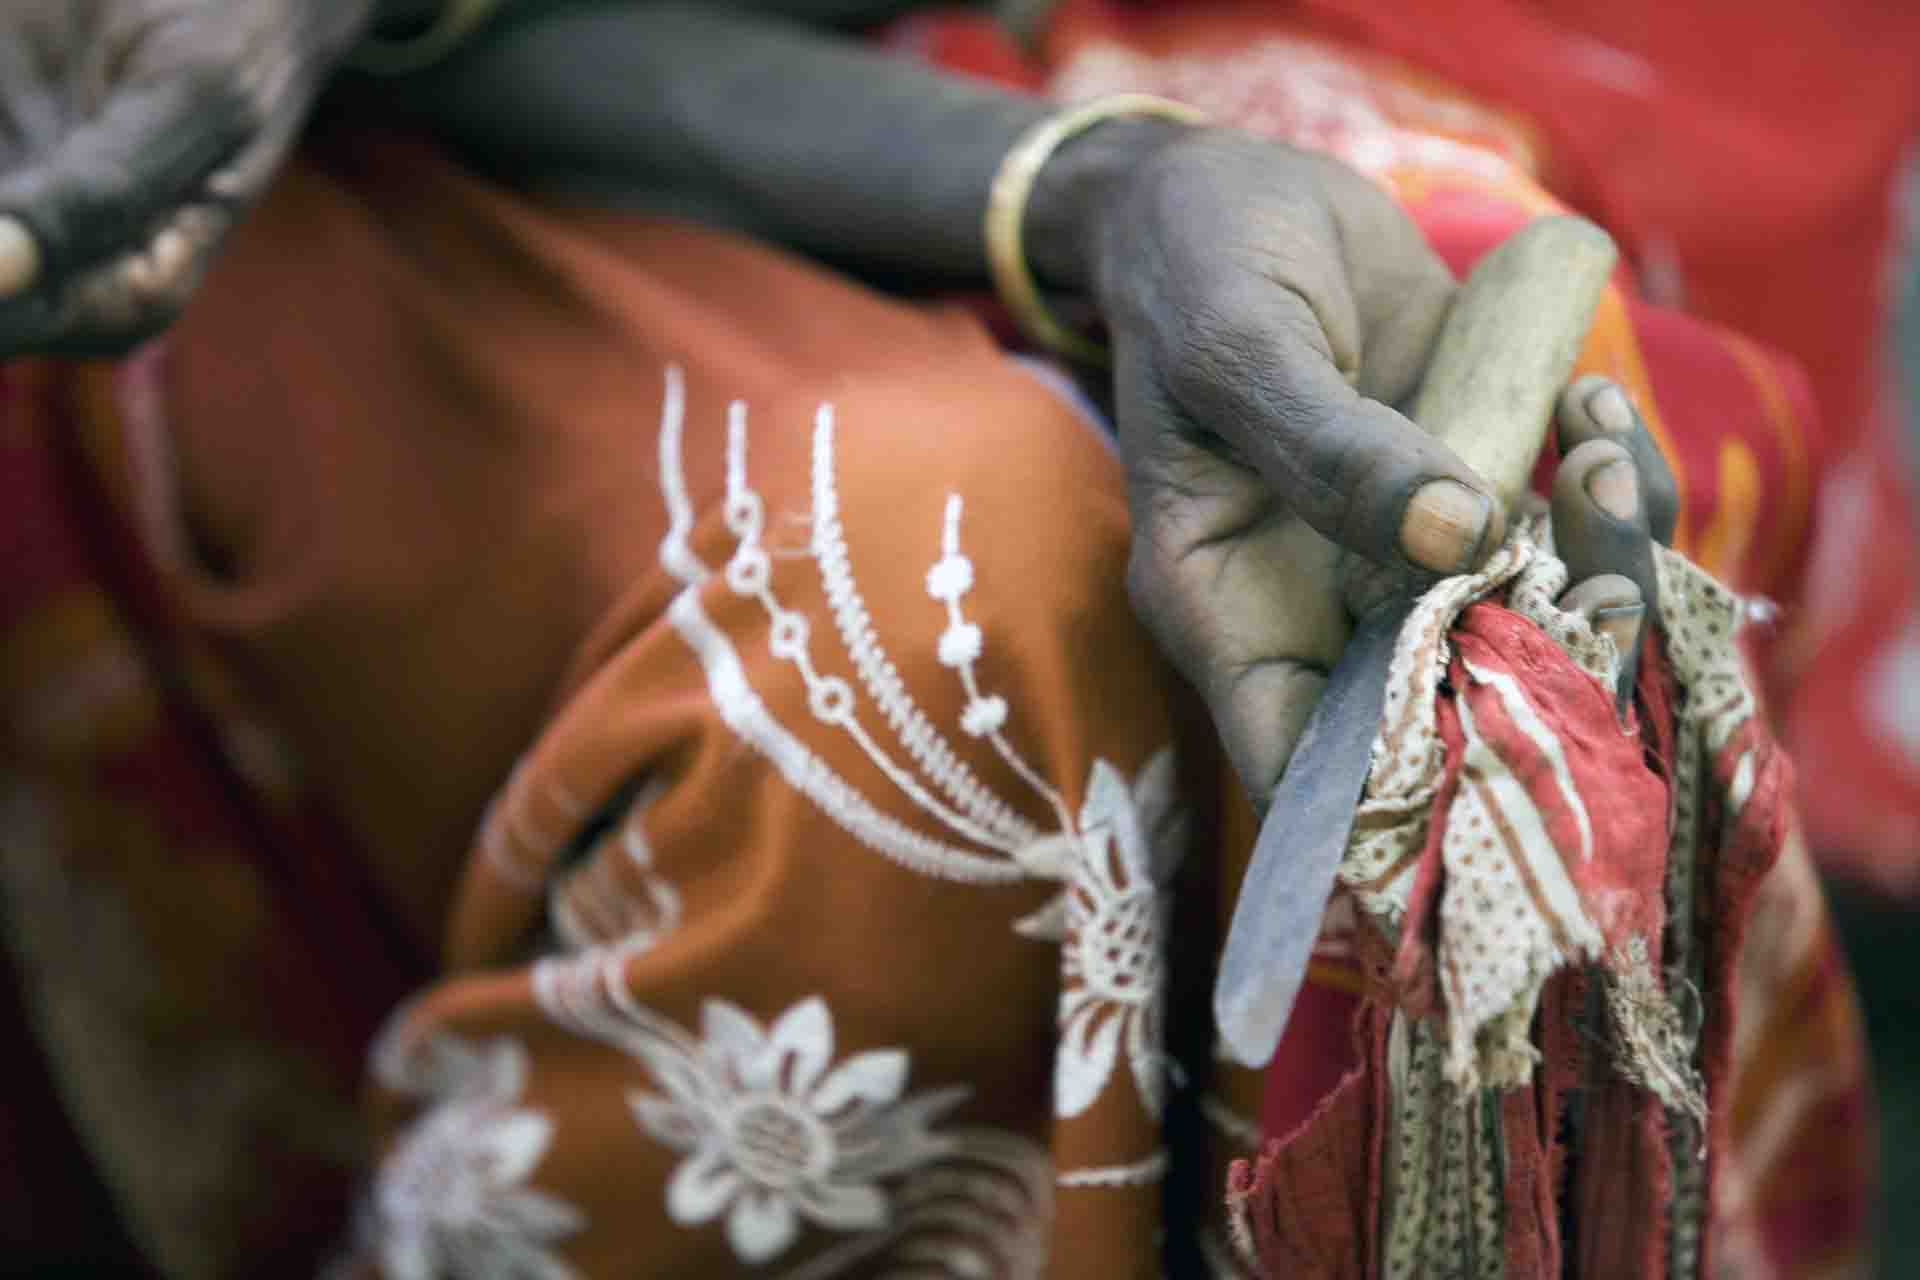 Una mujer sostiene un objeto cortante utilizado para la mutilación genital femenina / Foto: EP